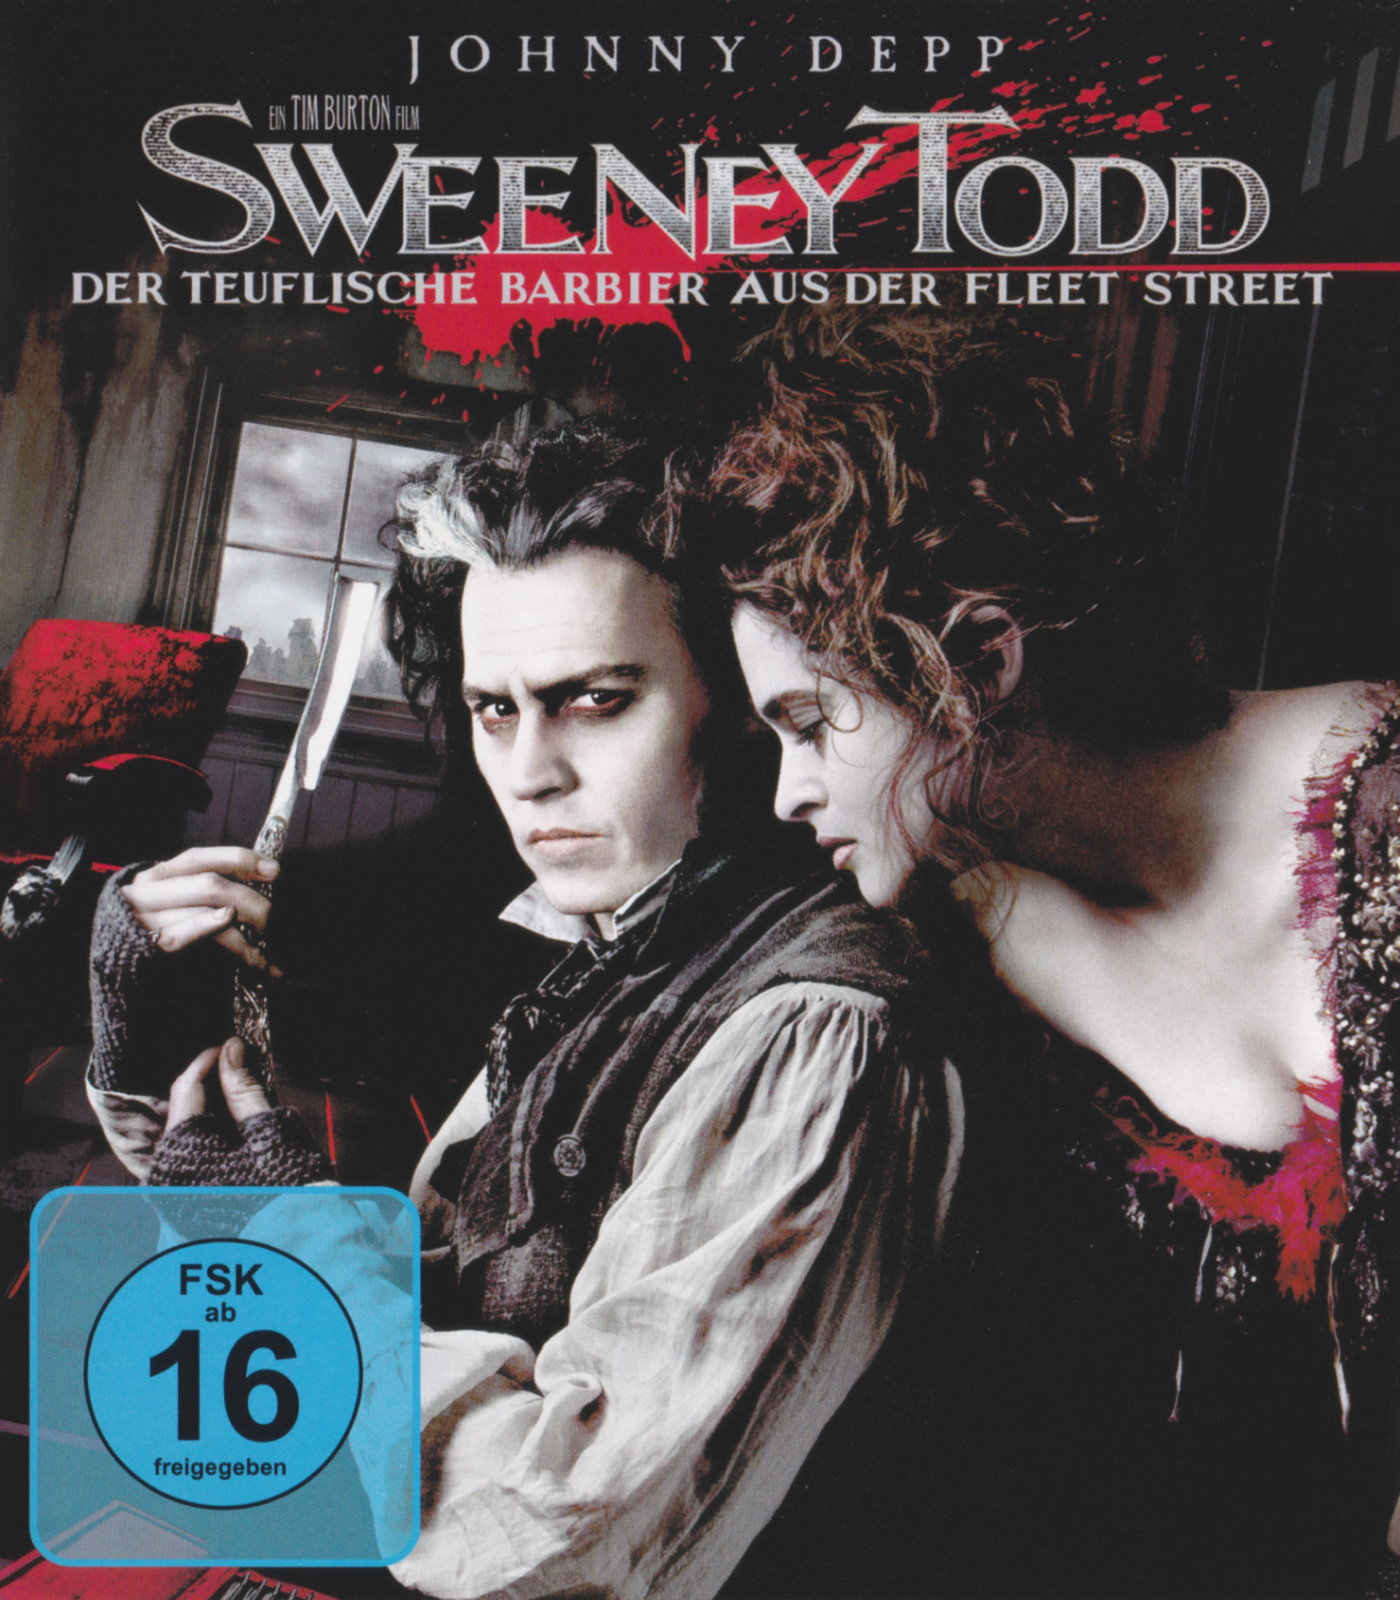 Cover - Sweeney Todd - Der teuflische Barbier aus der Fleet Street.jpg